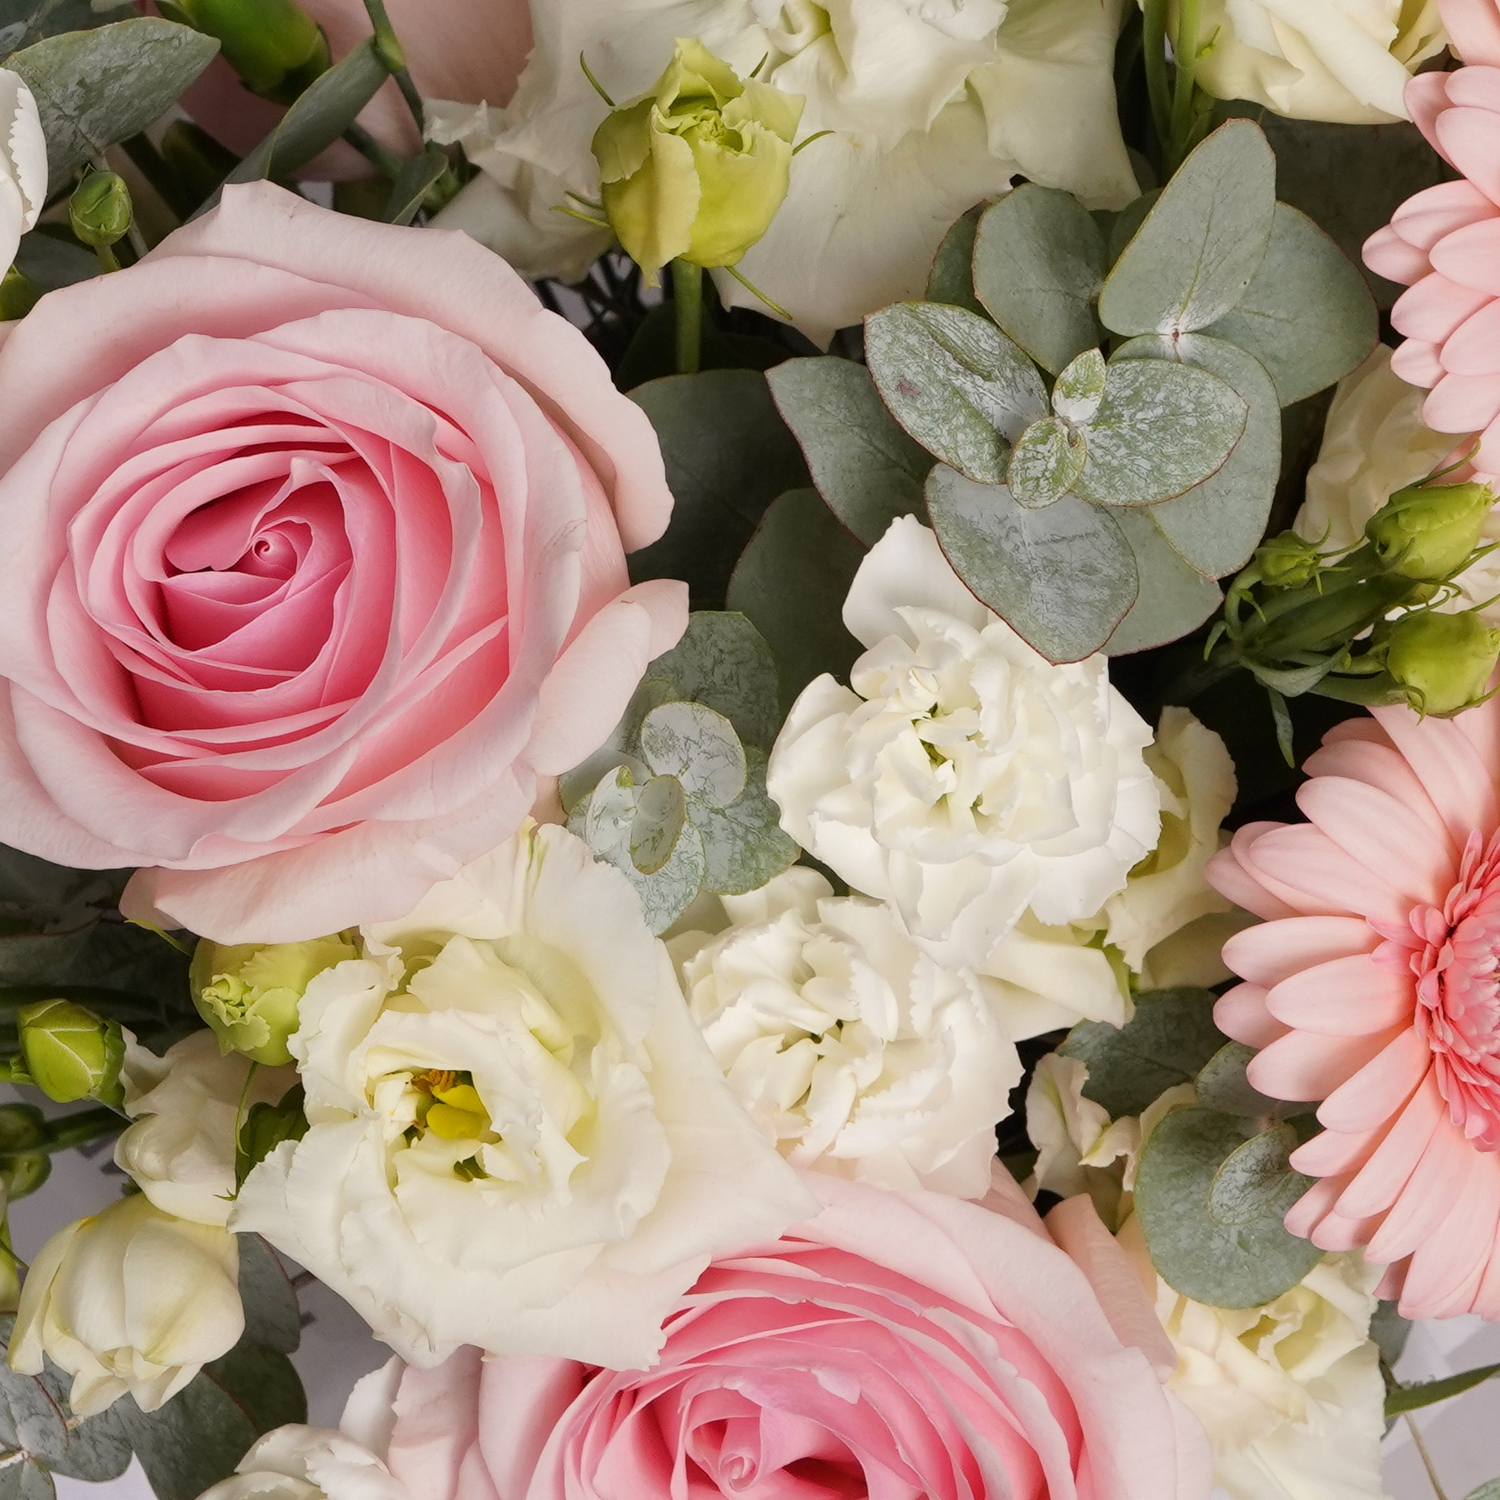 Розовые герберы, розы и белые эустомы, диантусы с эвкалиптом в кремовой коробке